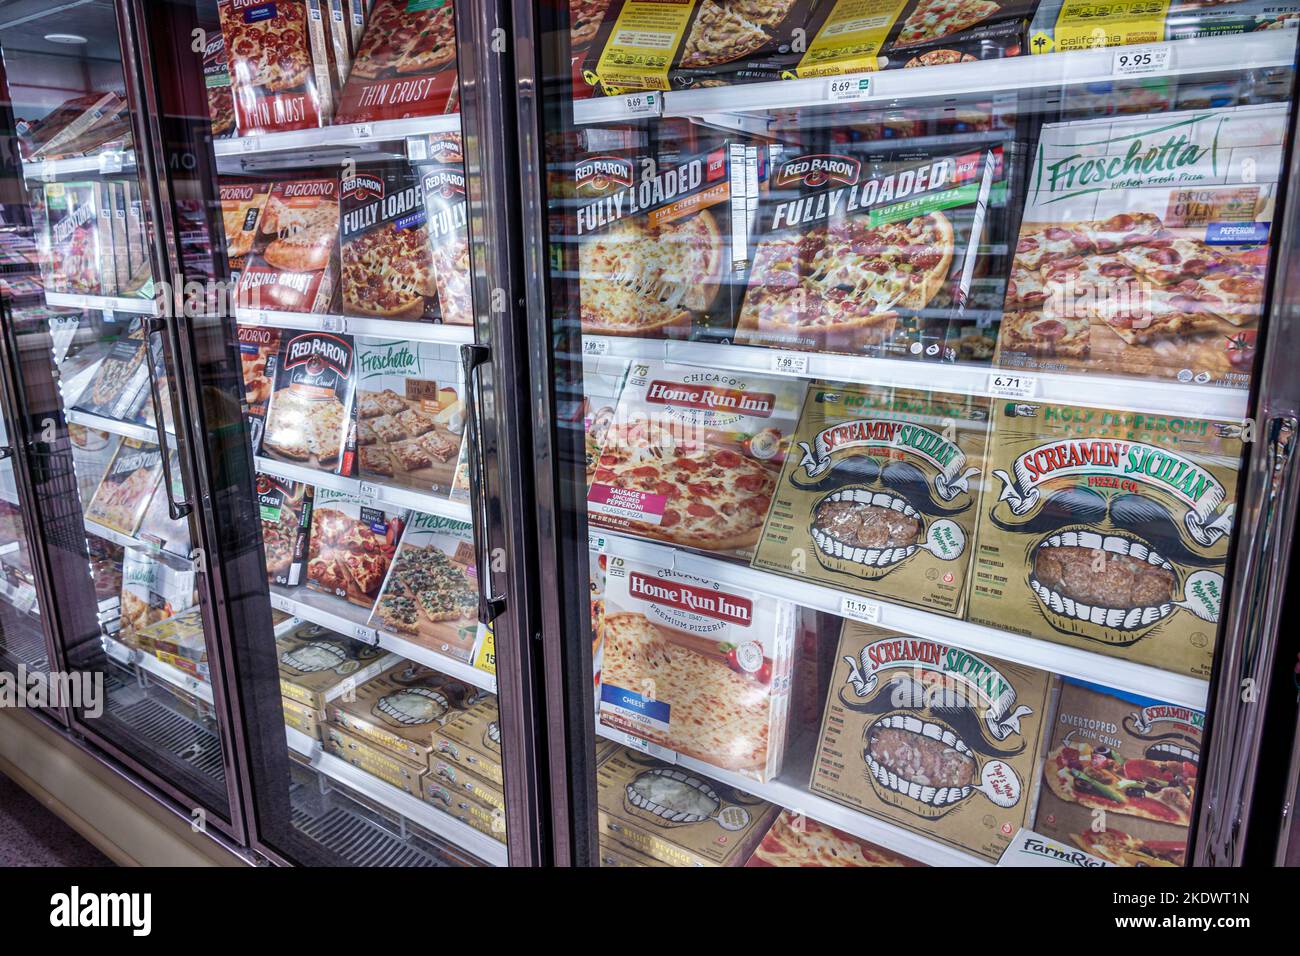 Surfside Florida Miami, Publix drogheria negozio negozi supermercato mercato alimentare, interno esposizione vendita frigorifero caso congelato Foto Stock